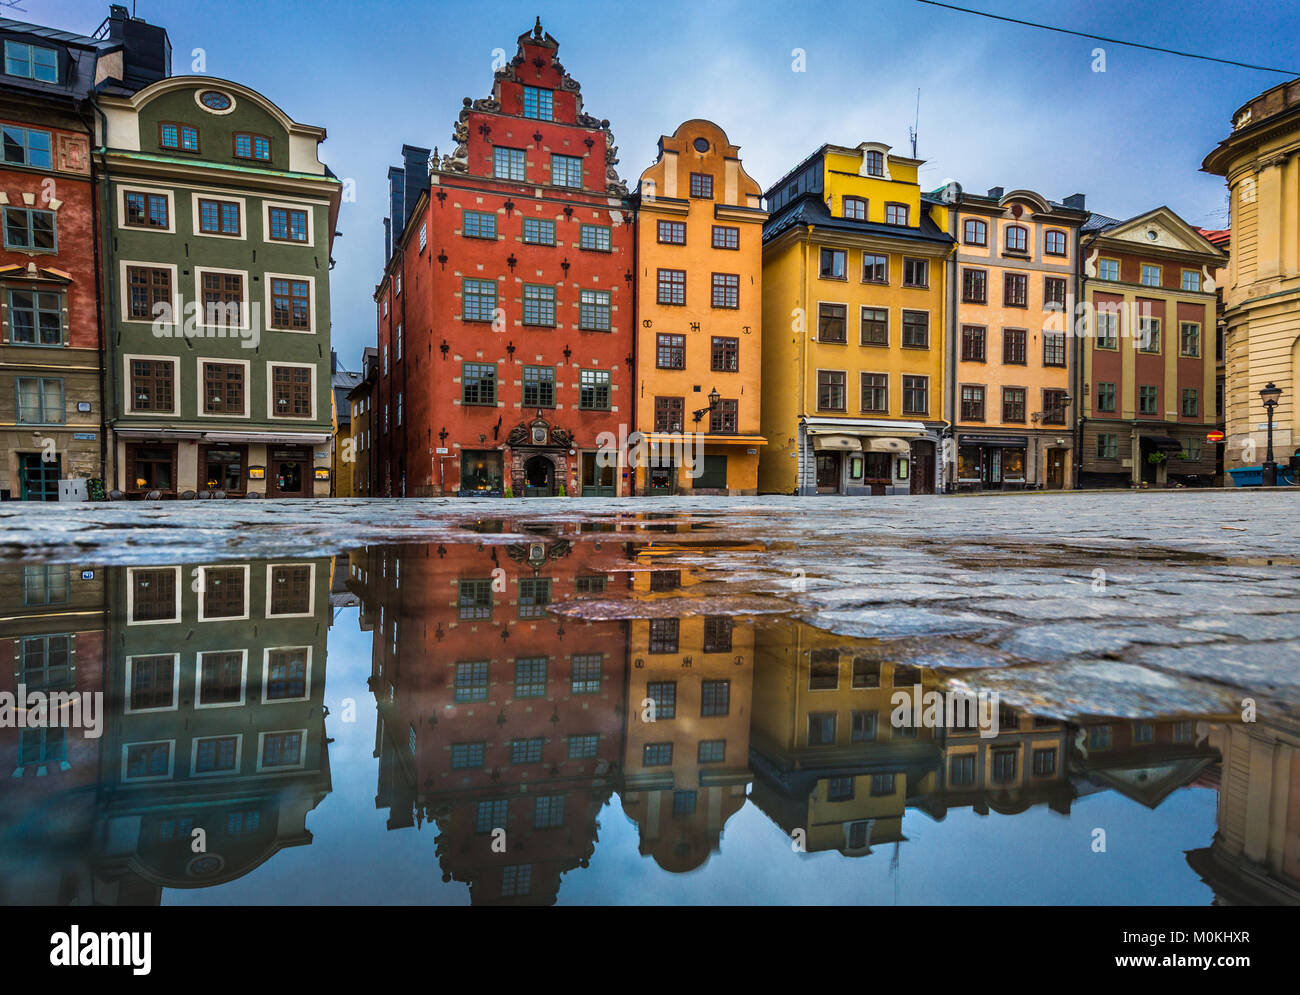 Case colorate al famoso Stortorget town square a Stoccolma storico di Gamla Stan (la Città Vecchia) riflettendo in una pozzanghera con cielo blu, Stoccolma, Svezia Foto Stock